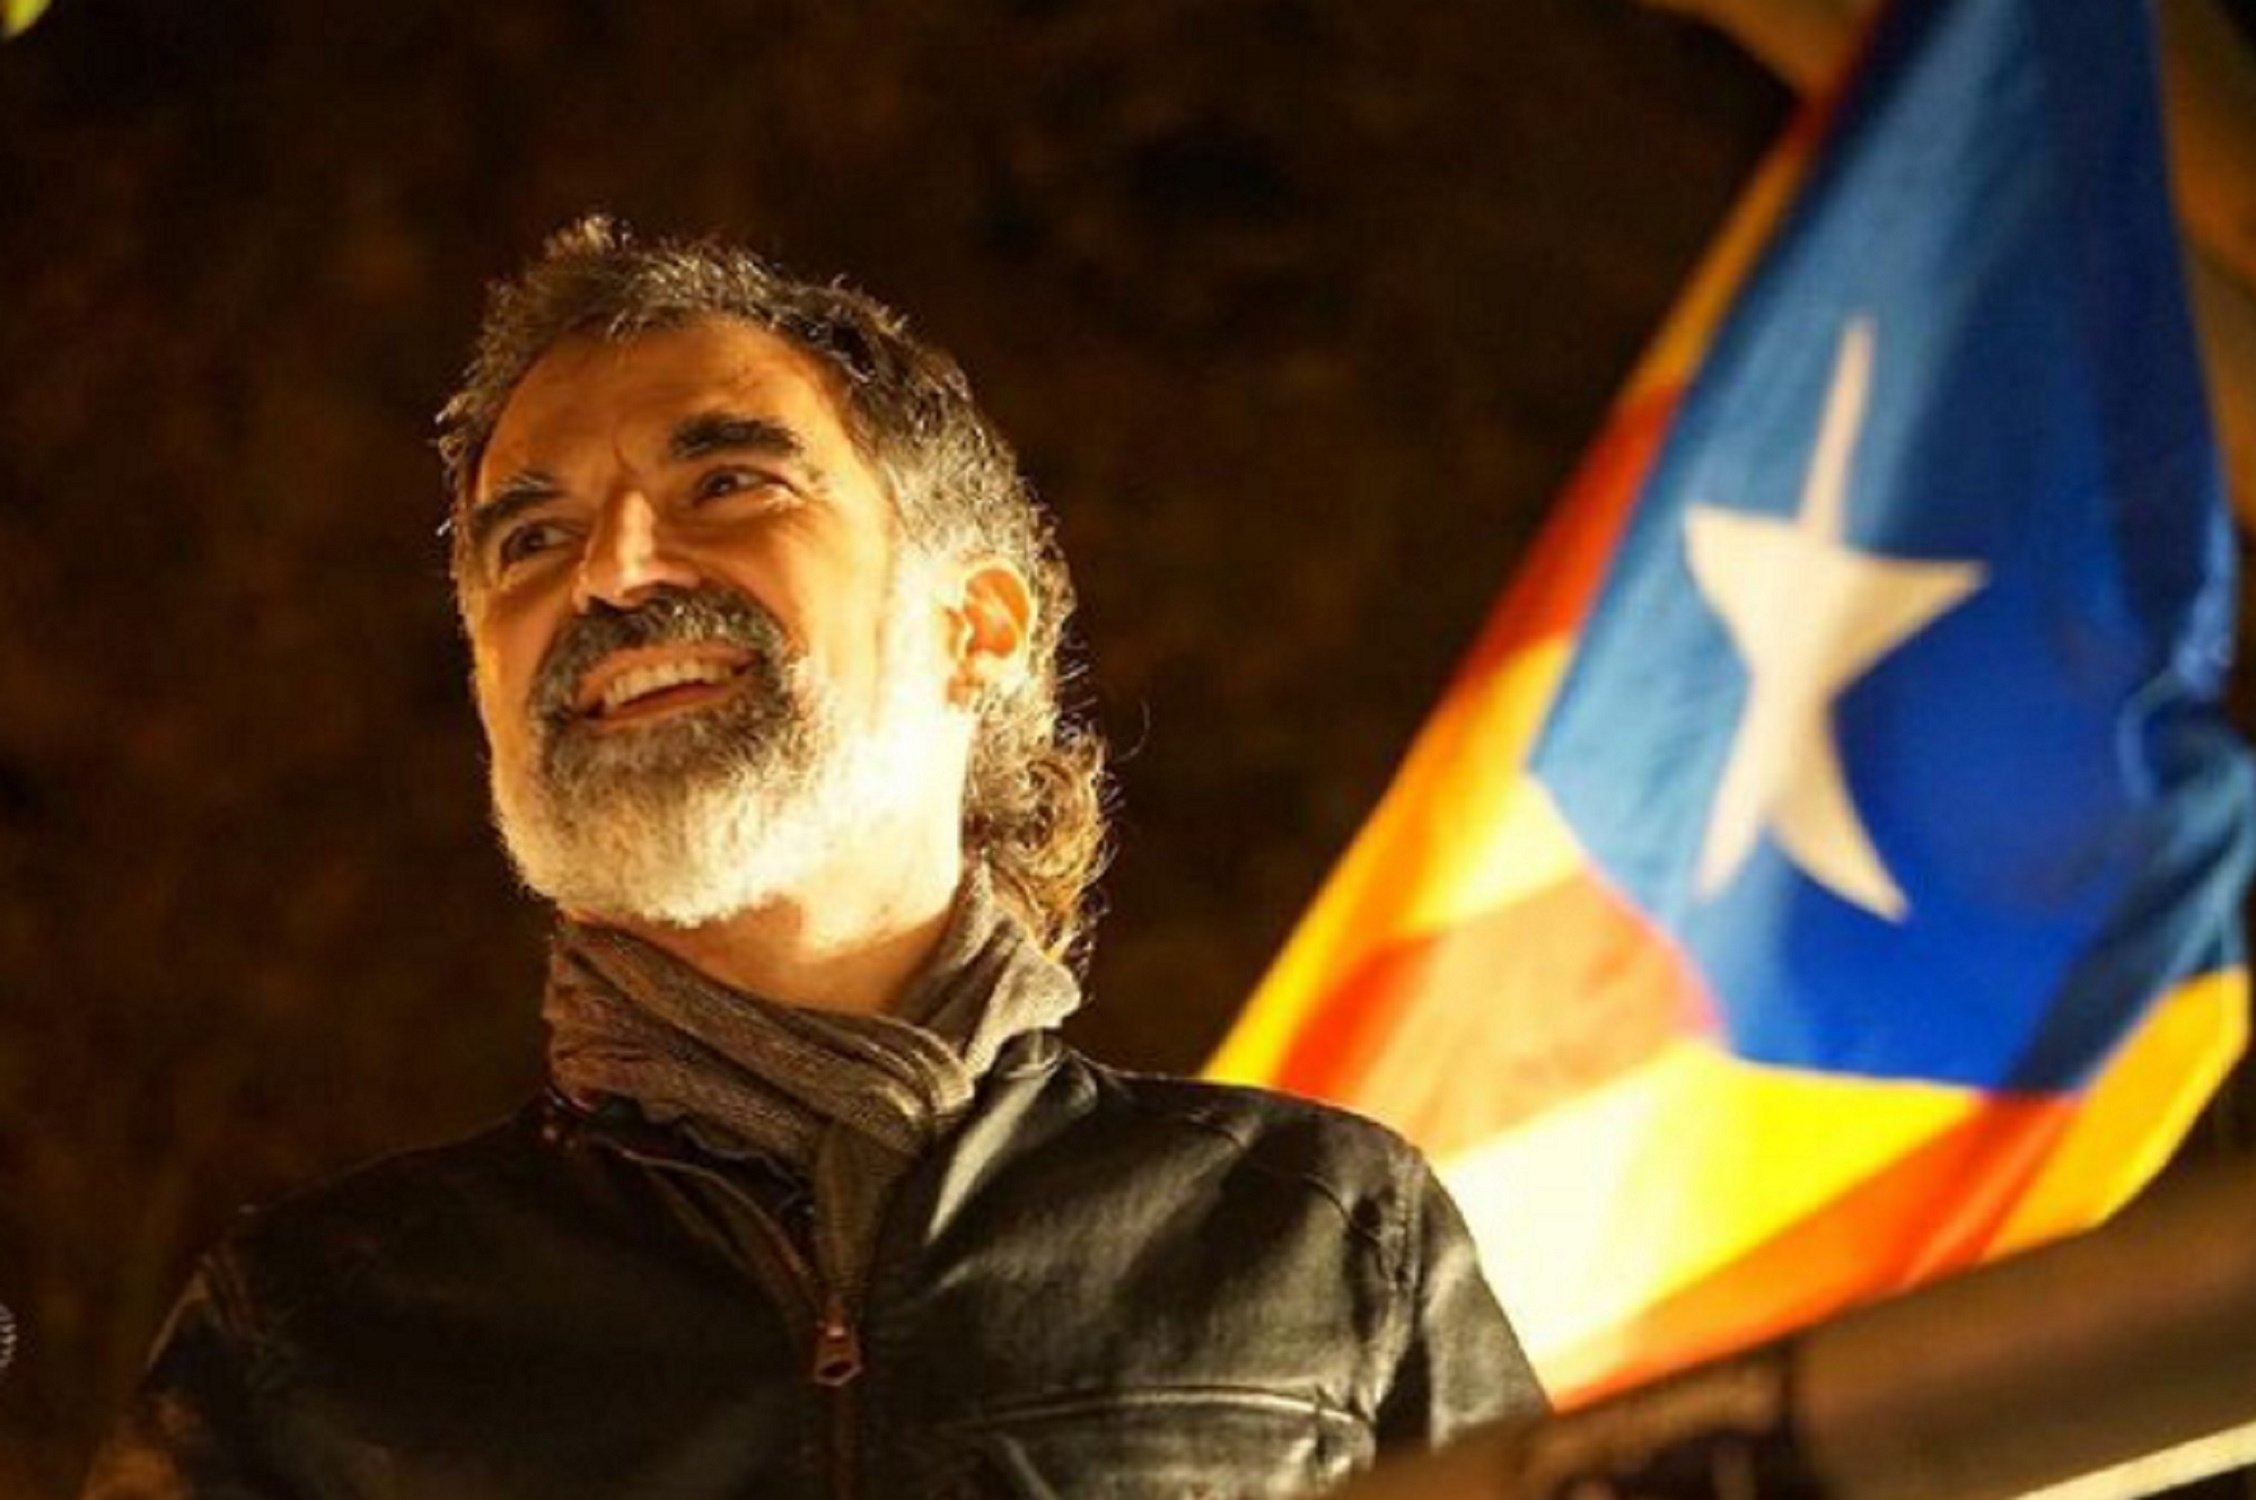 Sobrecogedora imagen que un periodista catalán ha visto de Cuixart: corazón roto